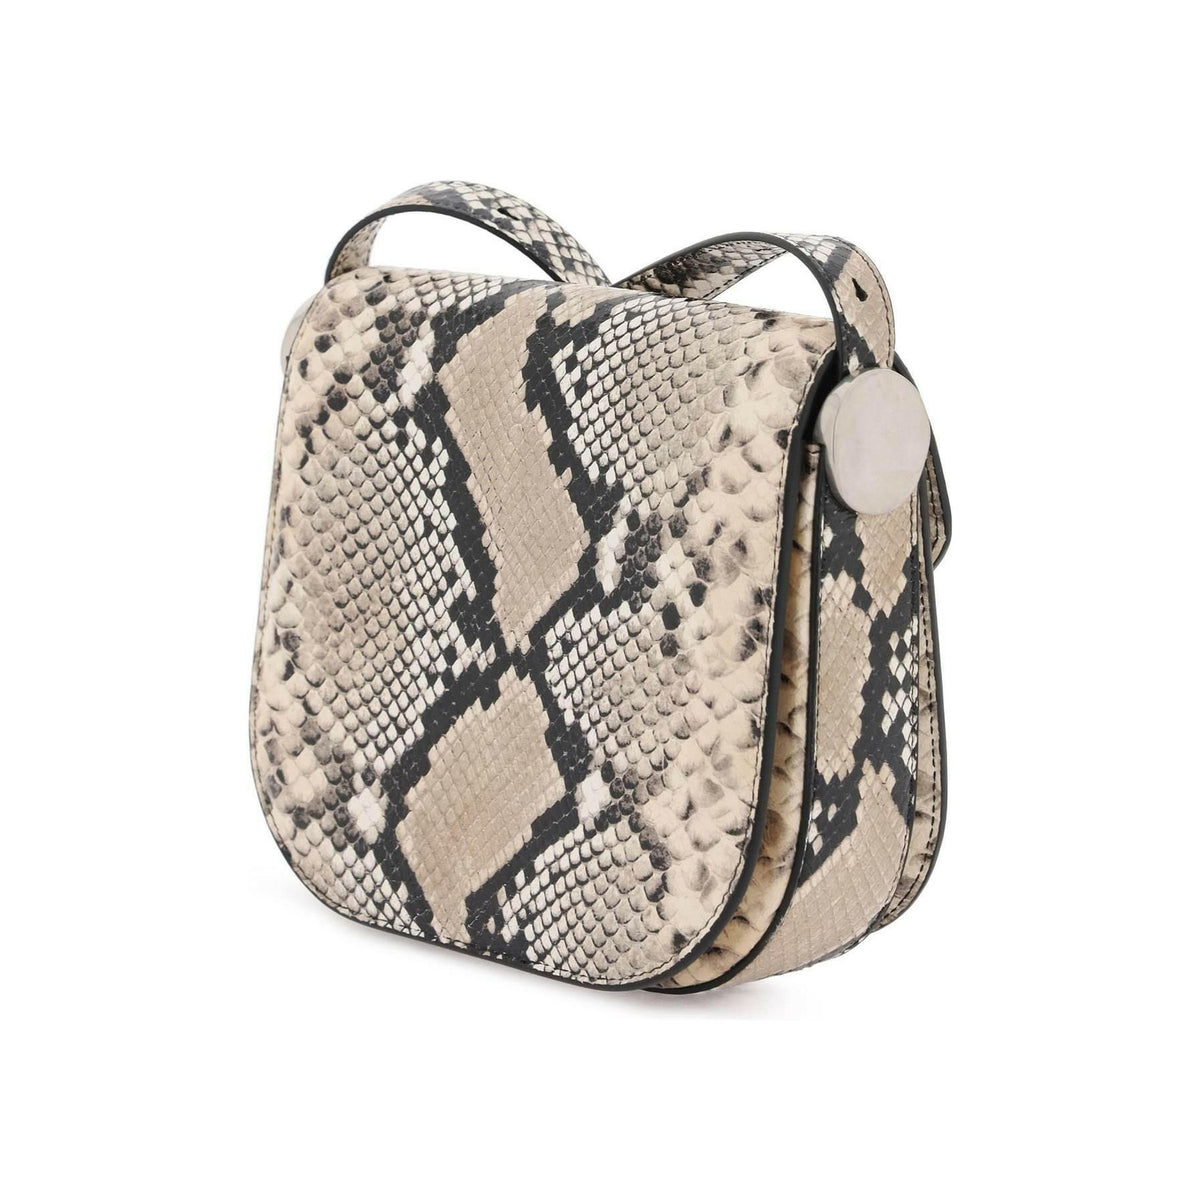 JIL SANDER - Python Leather Coin Shoulder Bag With Textured Finish - JOHN JULIA